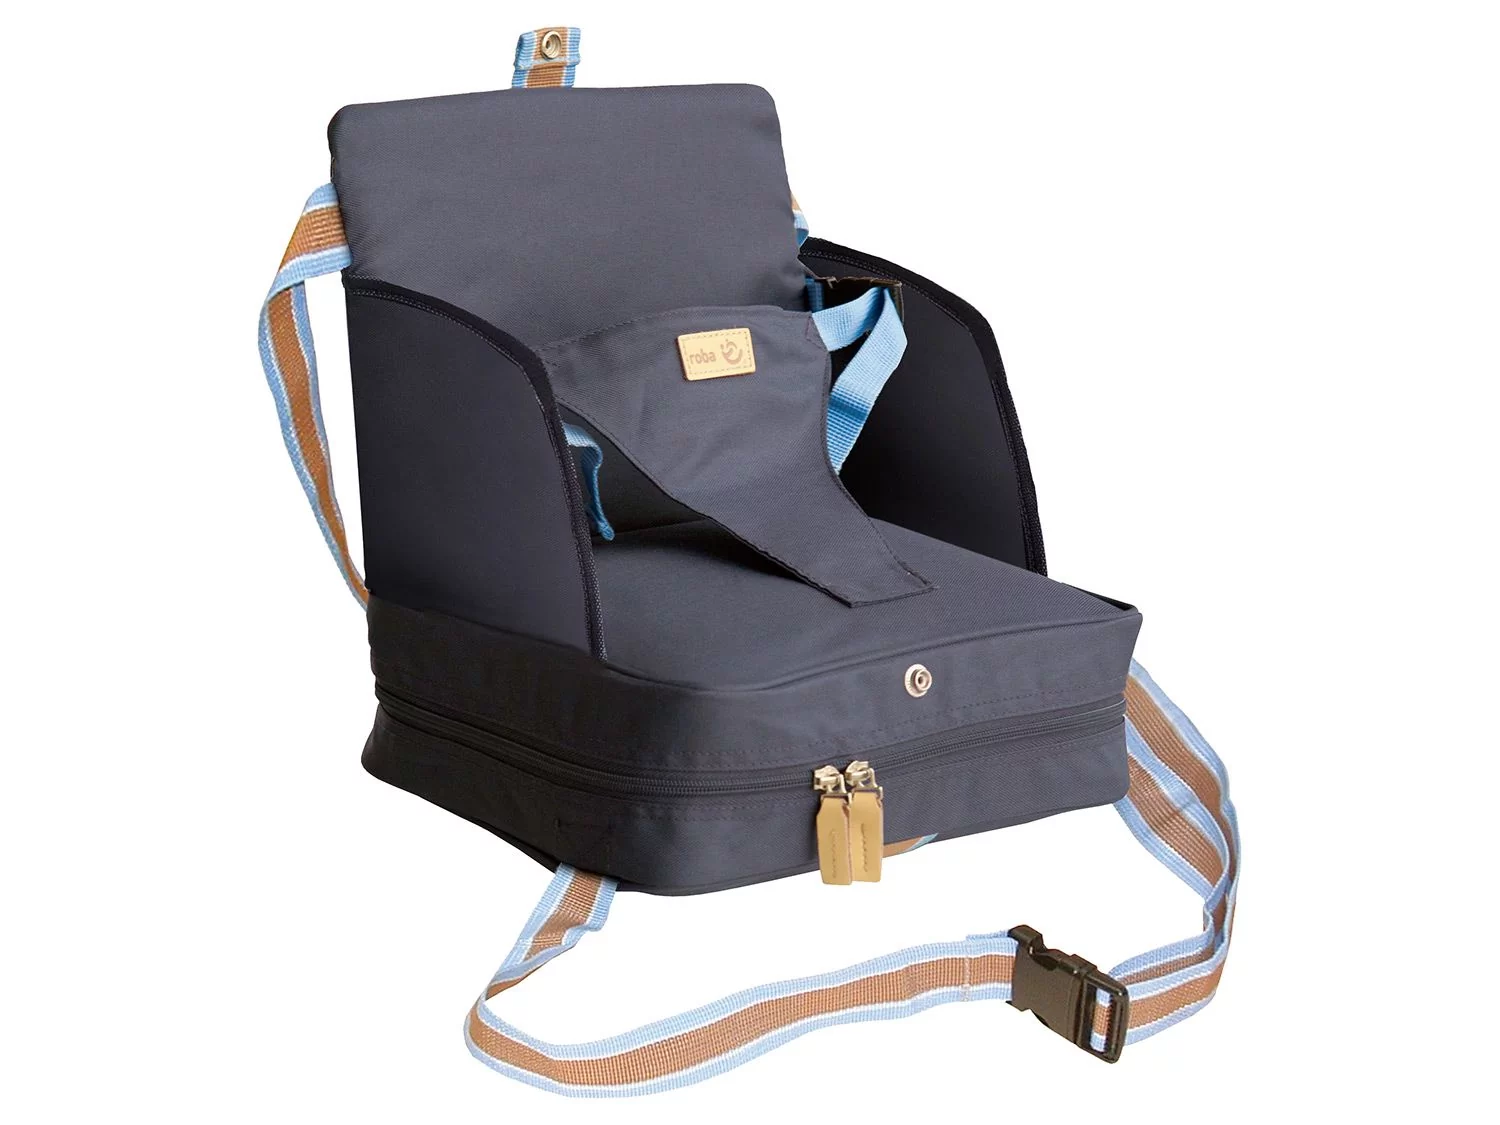 roba Roba fotelik boosterowy w kolorze niebieskim, mobilne nadmuchiwane siedzisko dziecięce jako podwyższenie siedziska i siedzenie podróżne  niebieski